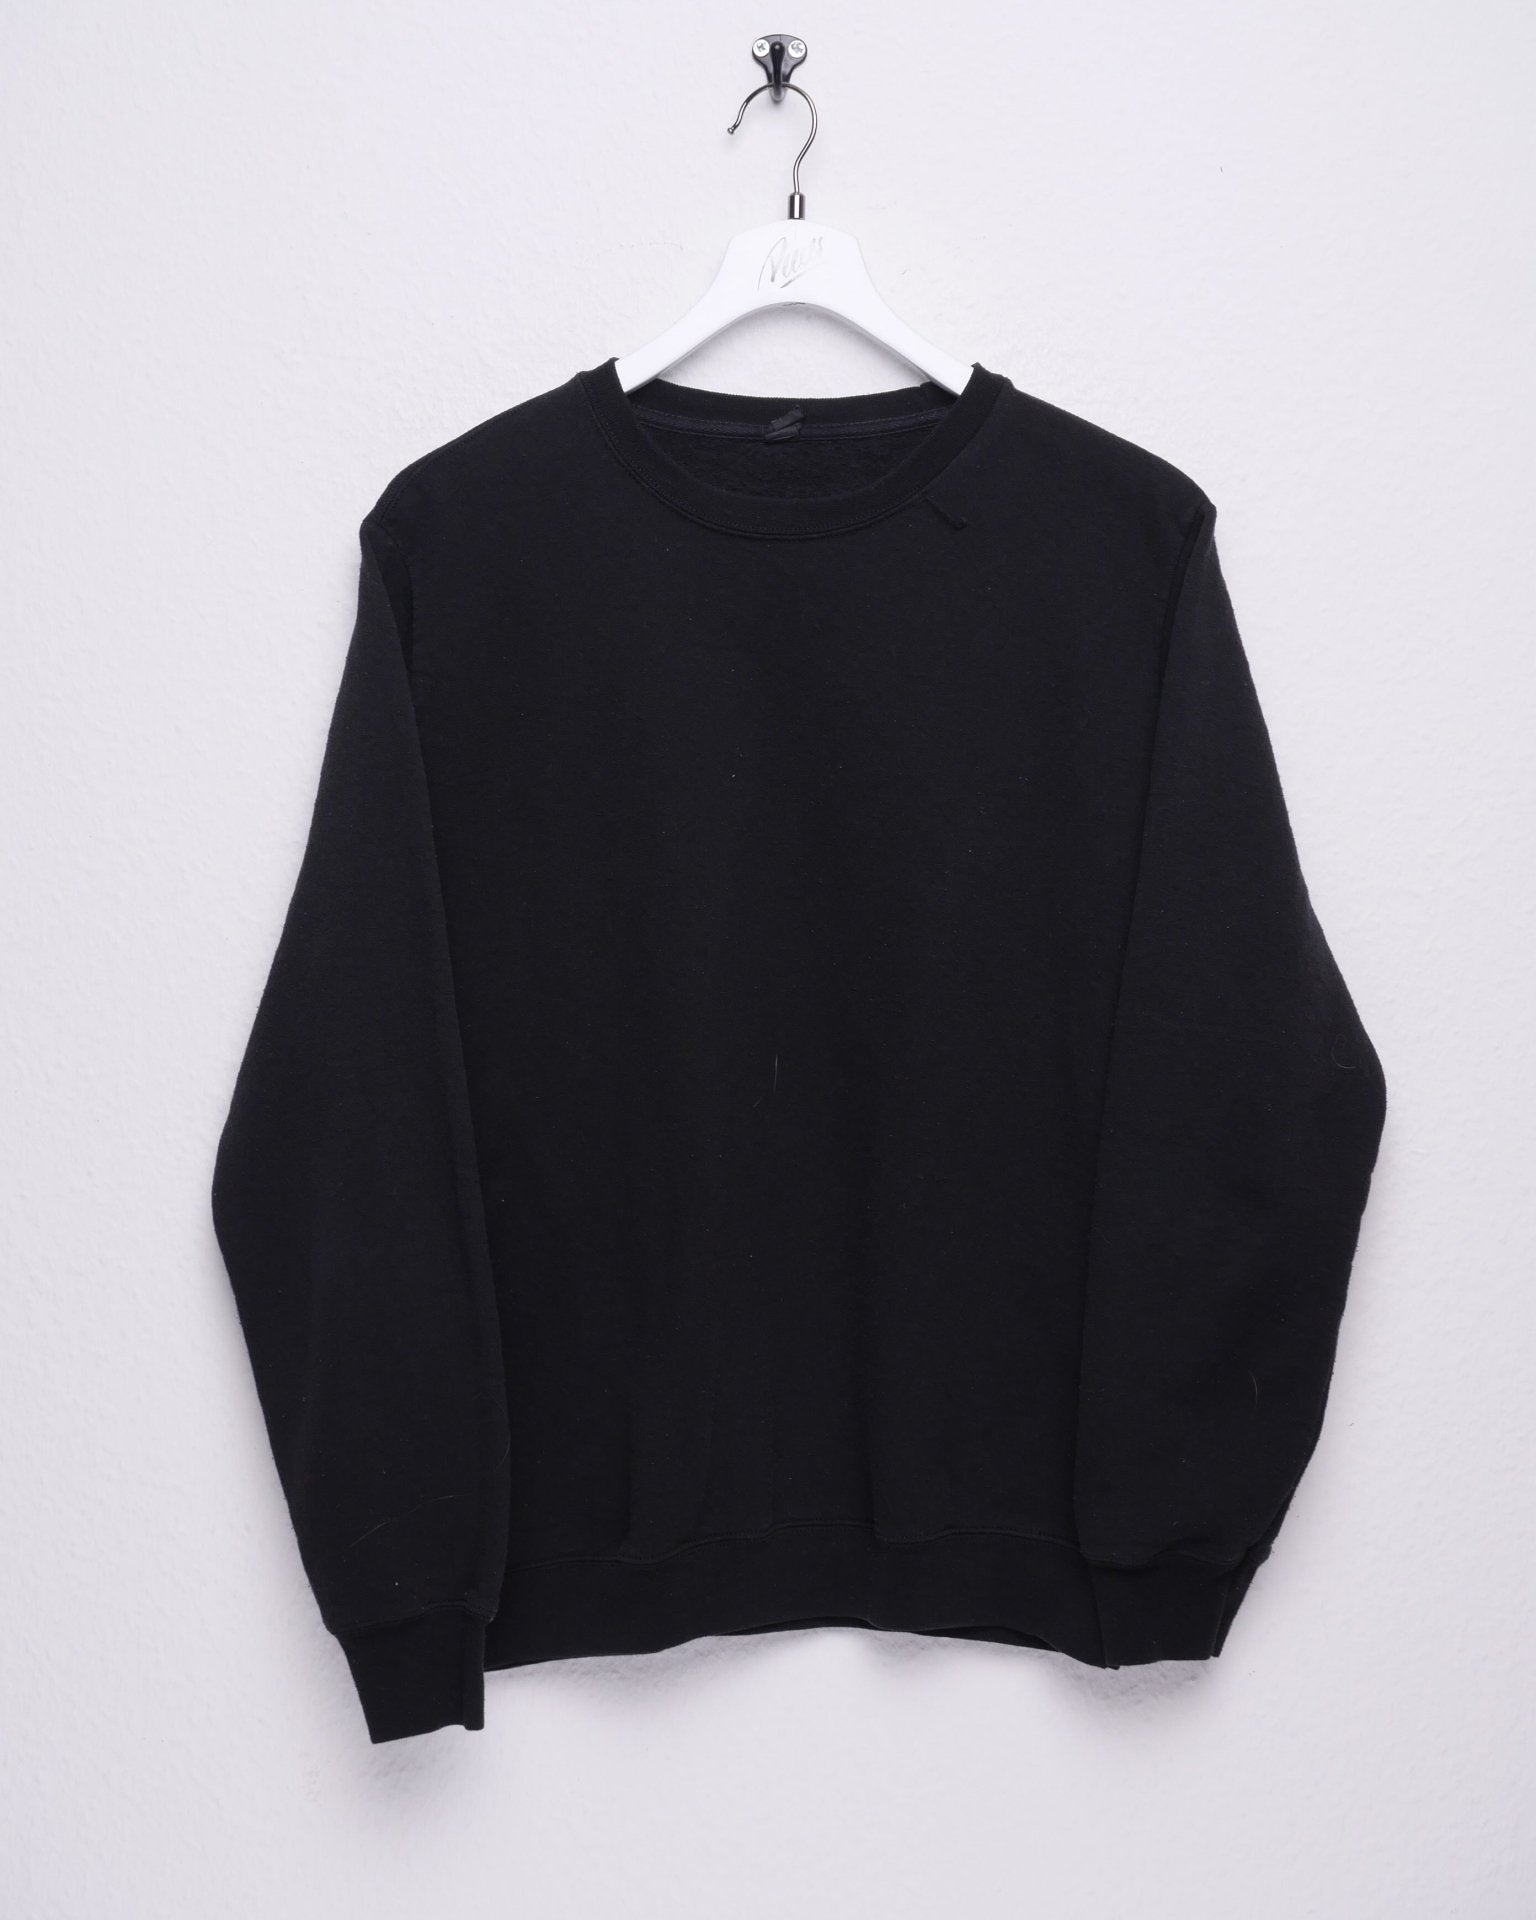 Vintage Basic Black Sweater - Peeces